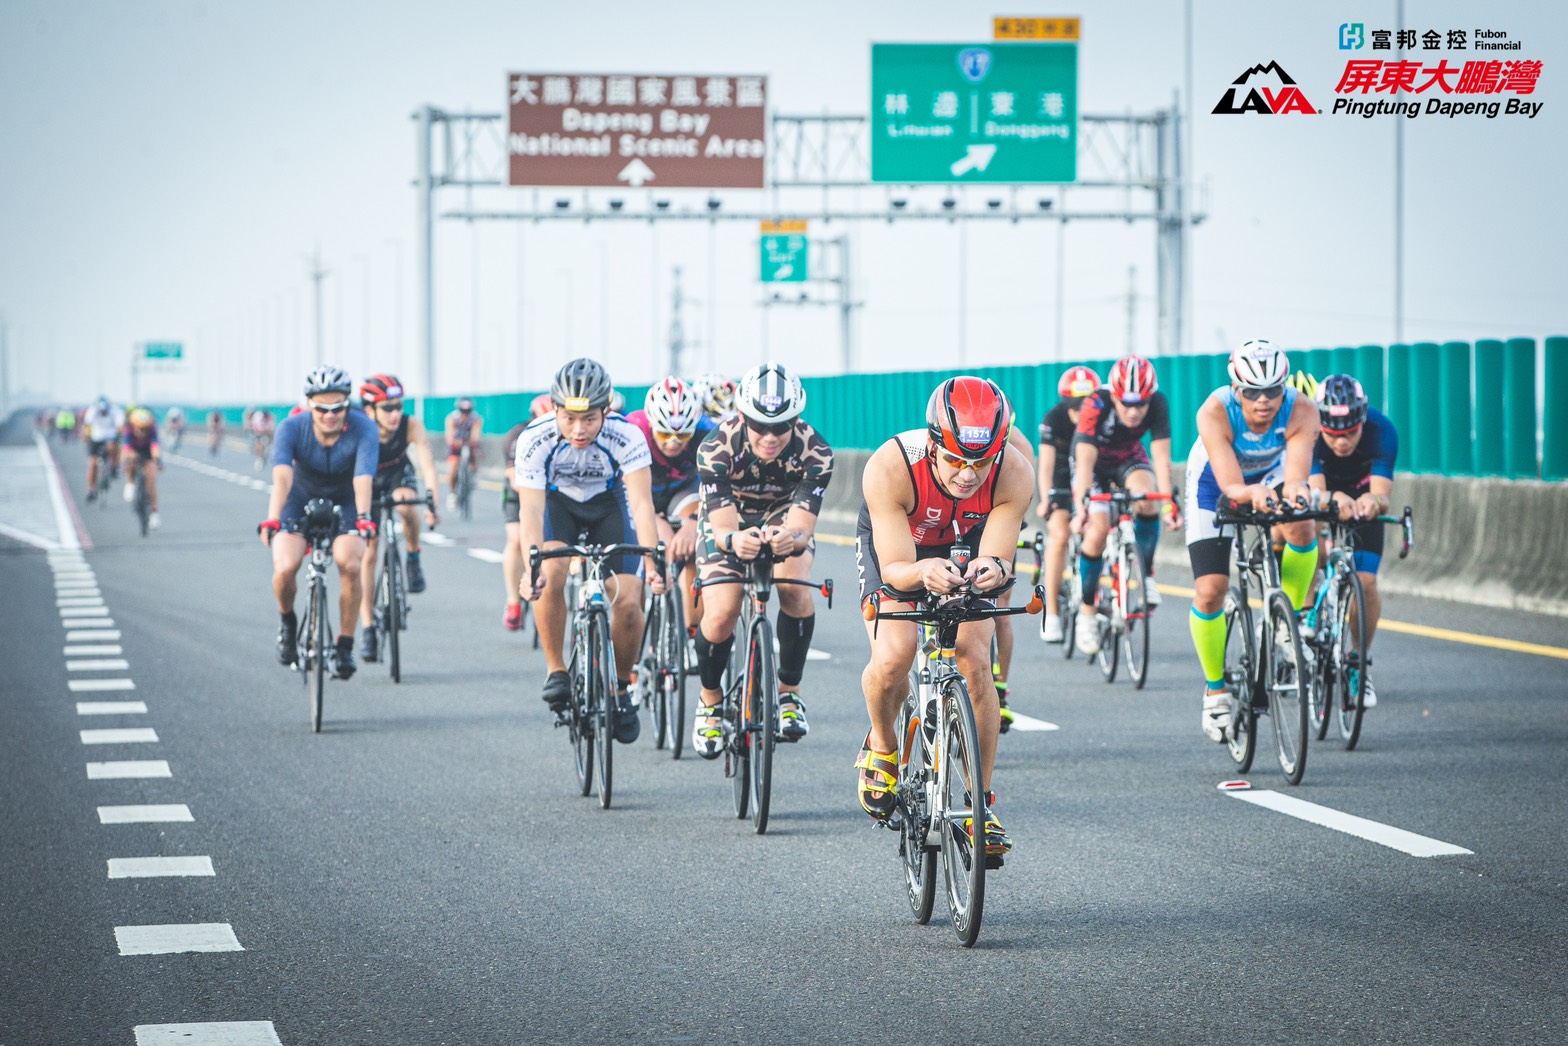 Les vélos «2020 Fubon Financial Holding LAVA TRI Triathlon Dapeng Bay Station» ferment le tronçon et les rocades de la route nationale Nanzhou Dapeng Bay, permettant aux coureurs de profiter du plaisir du speed riding